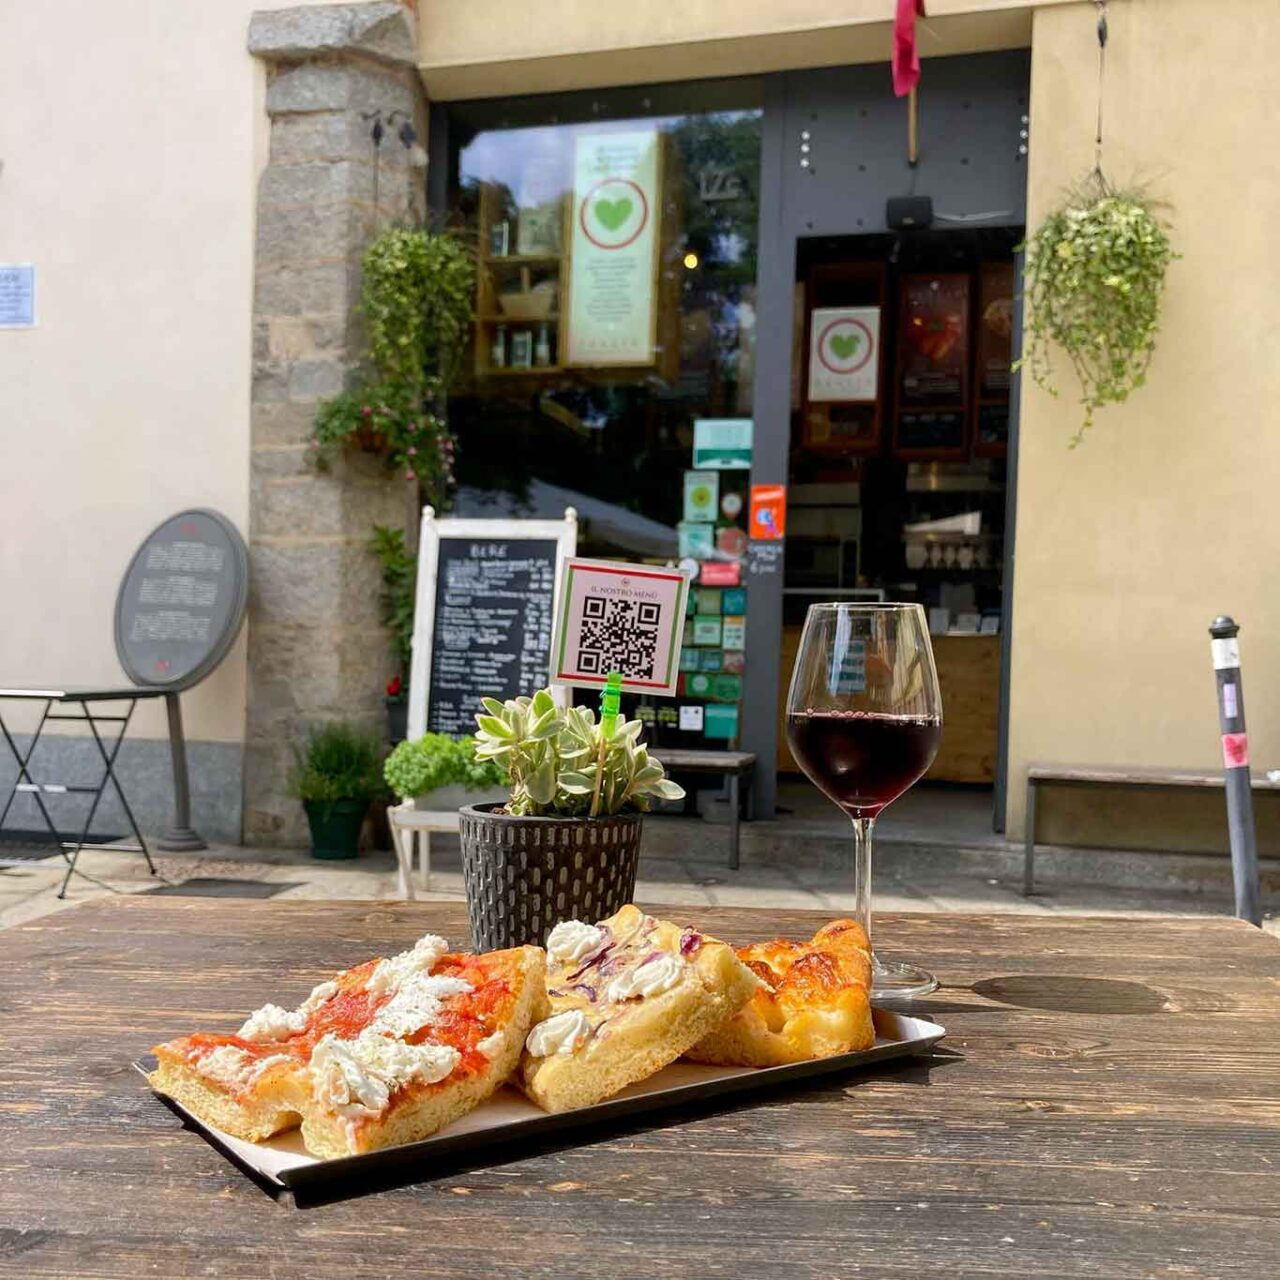 pizze al taglio a Torino: Taglio per fetta